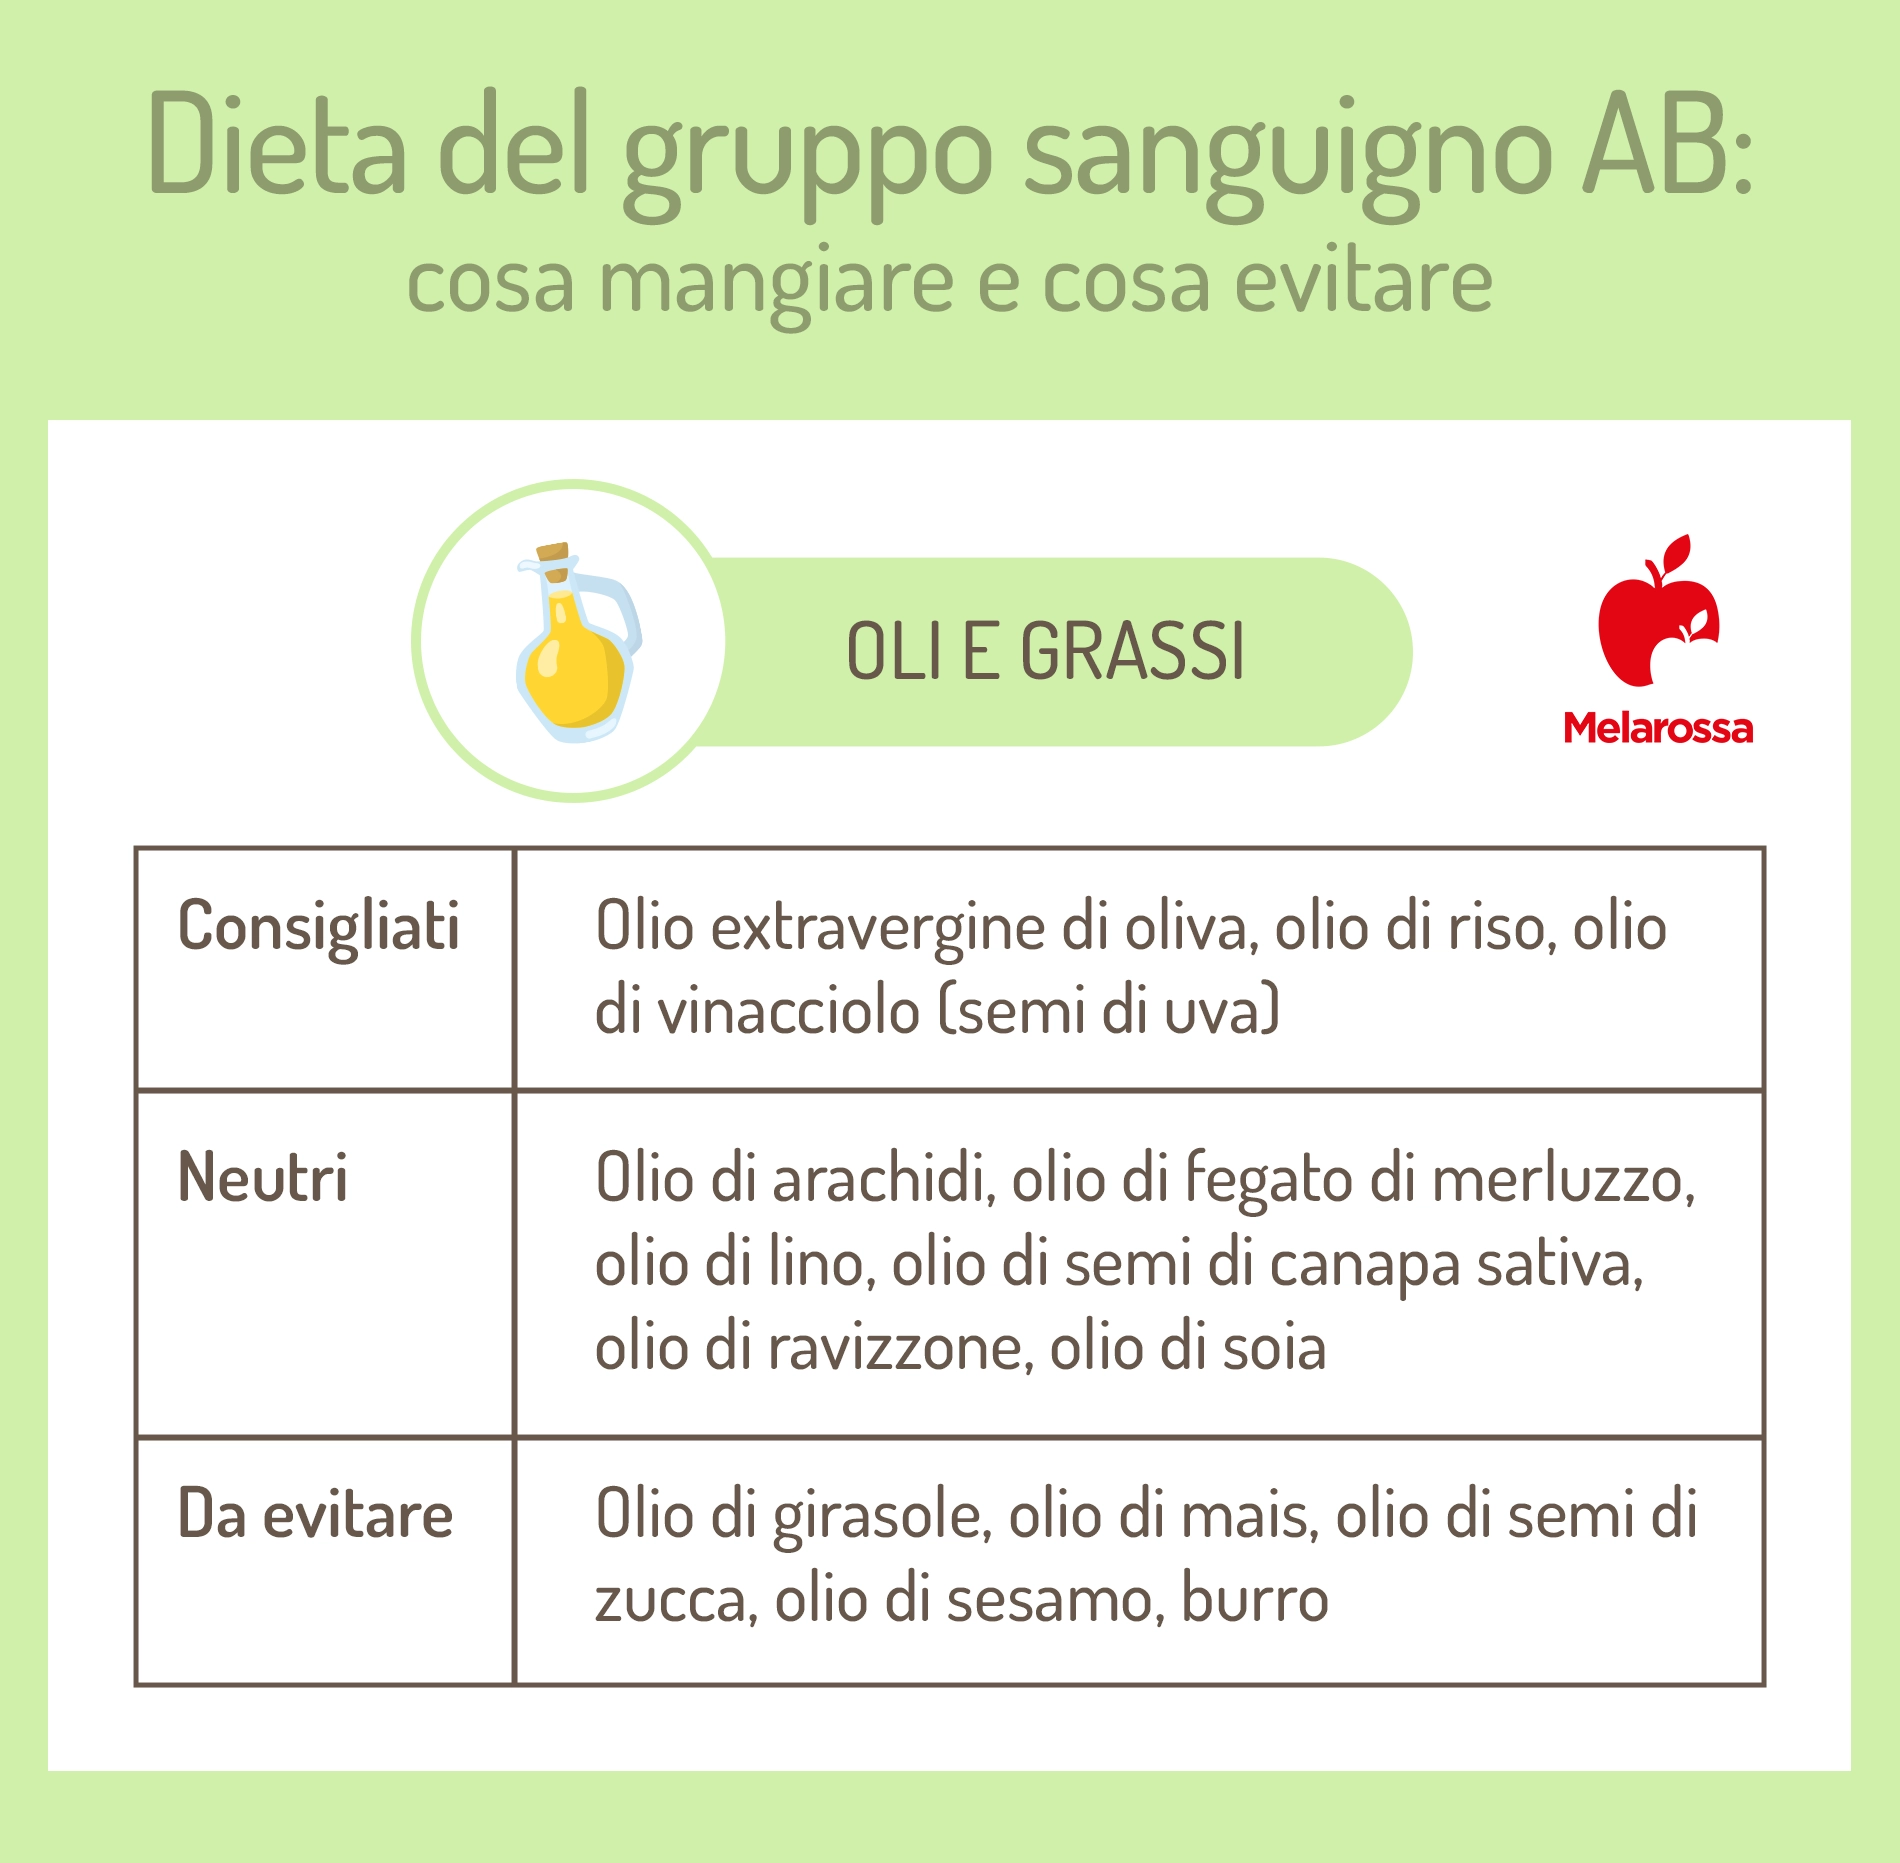 dieta del gruppo sanguigno AB: oli e grassi